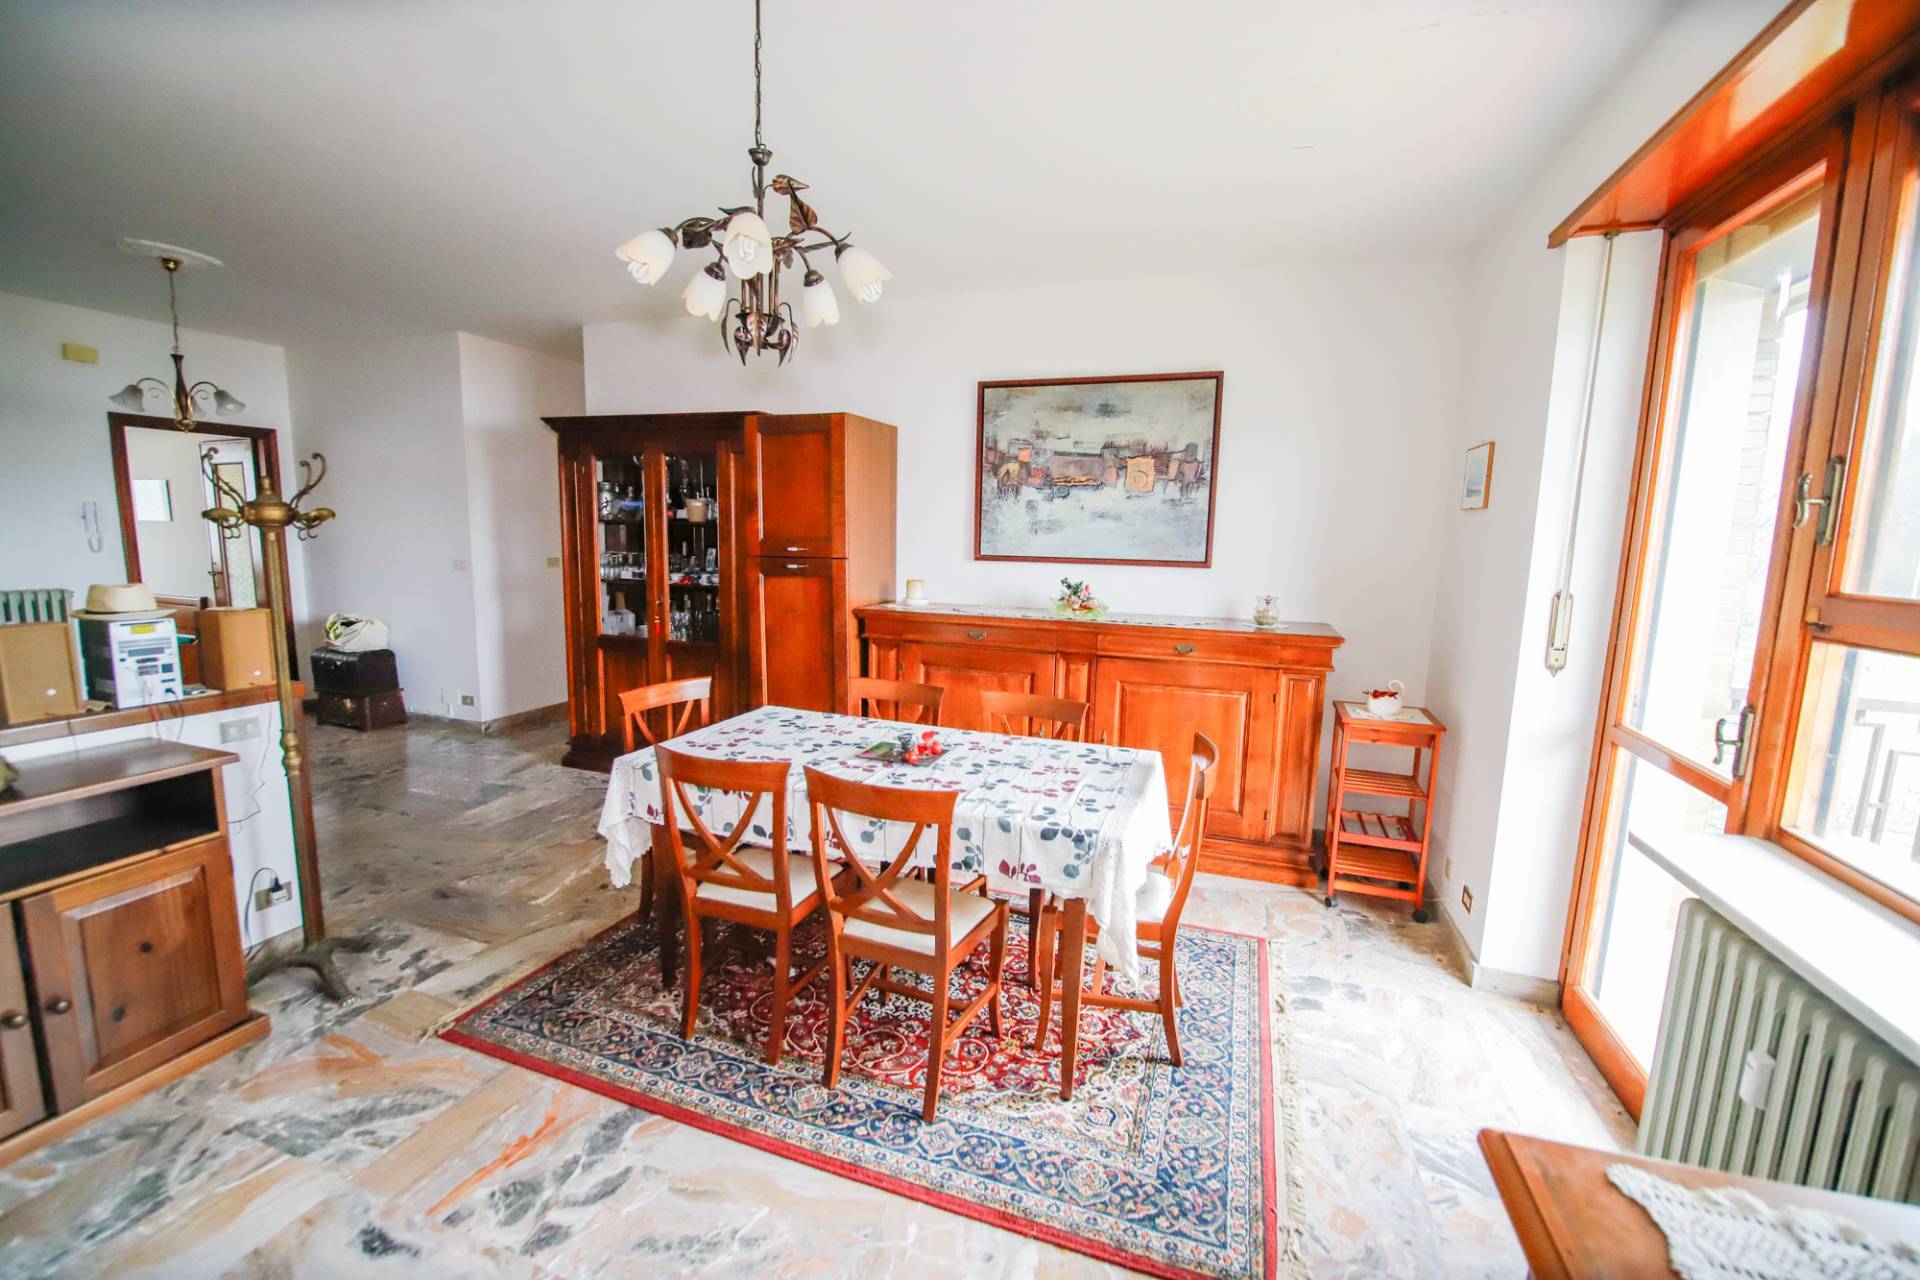 Appartamento in vendita a Lombardore, 4 locali, prezzo € 89.000 | PortaleAgenzieImmobiliari.it